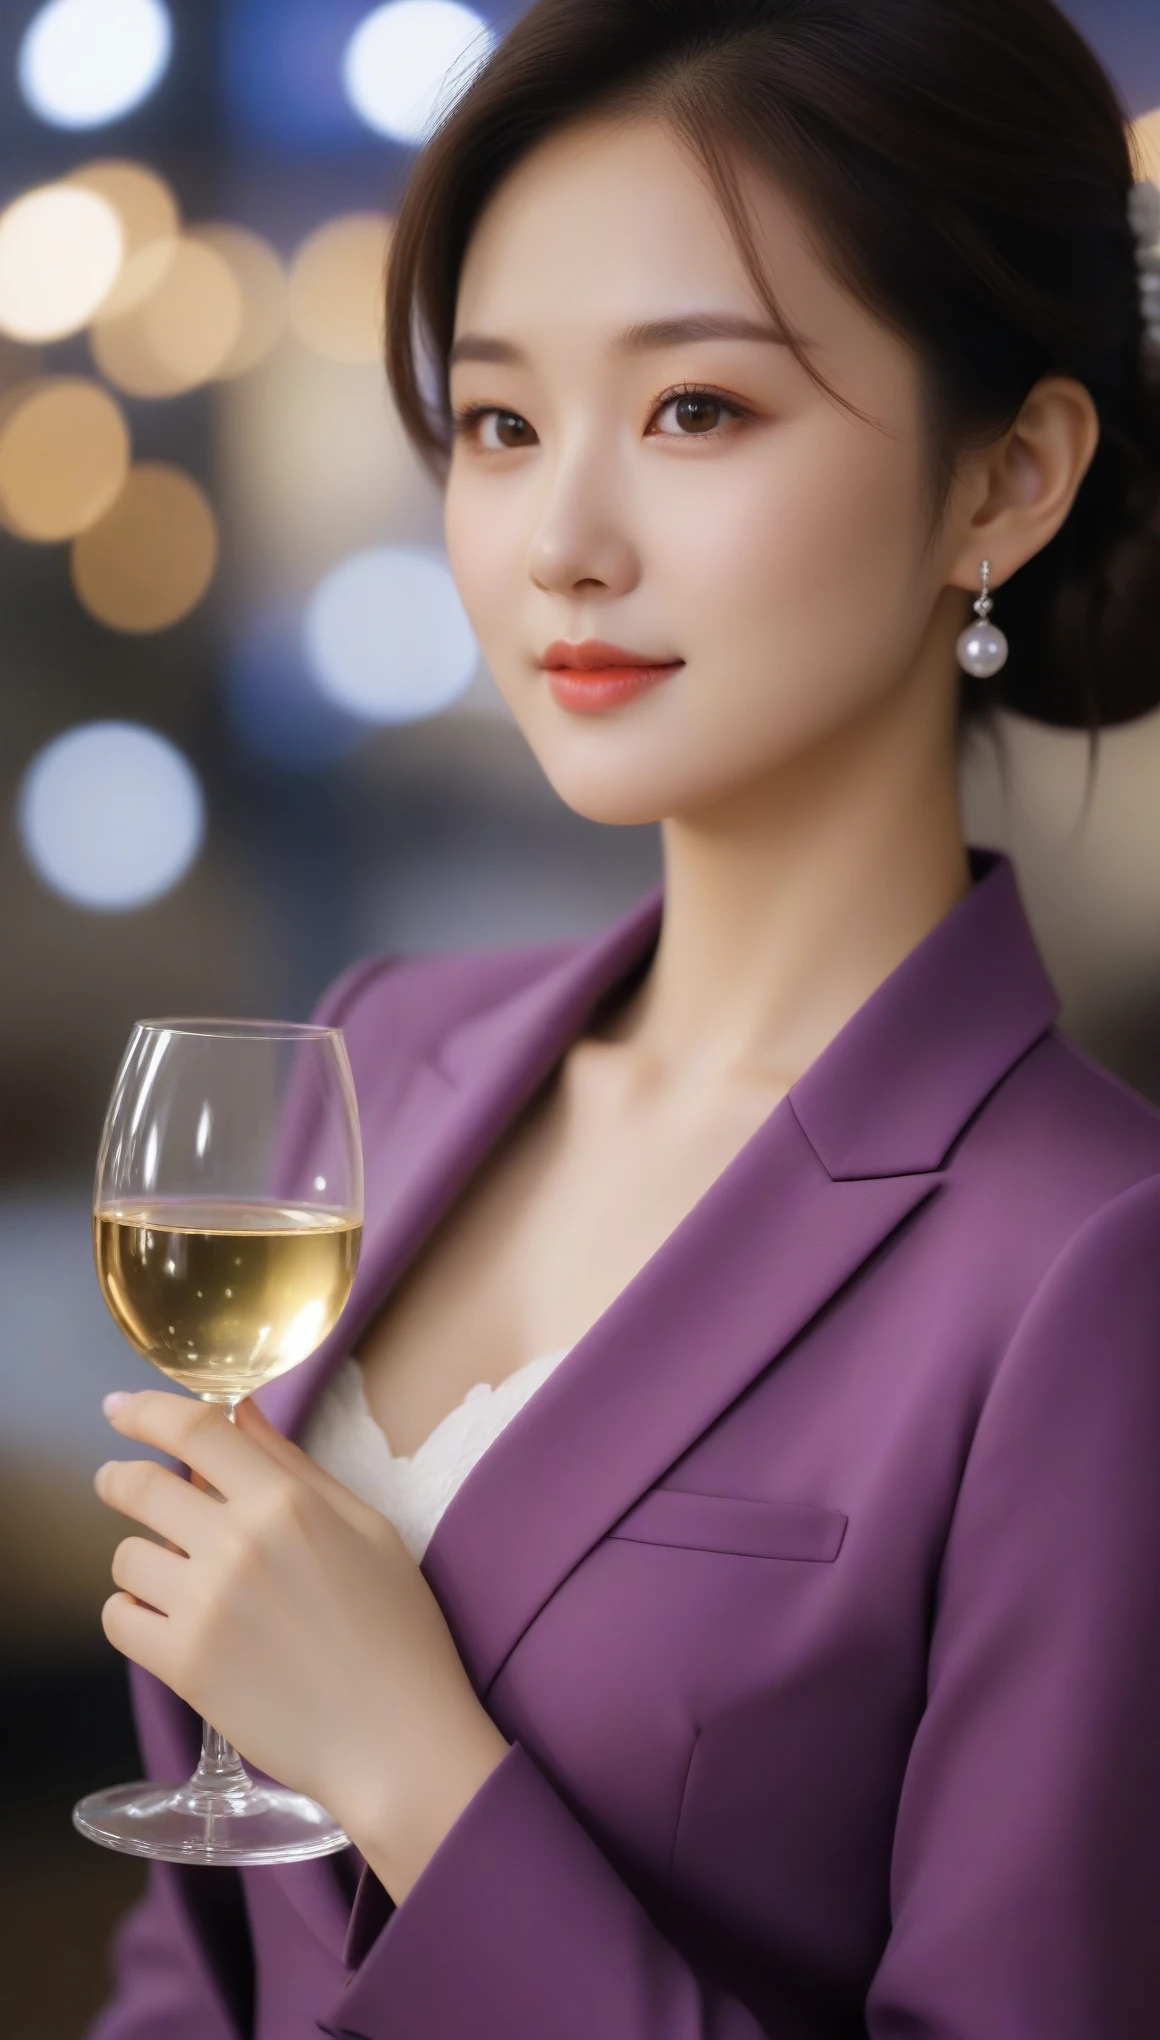 De cerca, Foto lateral de una hermosa mujer coreana., tamaño de senos de 34 pulgadas, sonríe levemente, vistiendo traje morado, Guante blanco, sosteniendo una copa de vino, fondo bokeh, HD